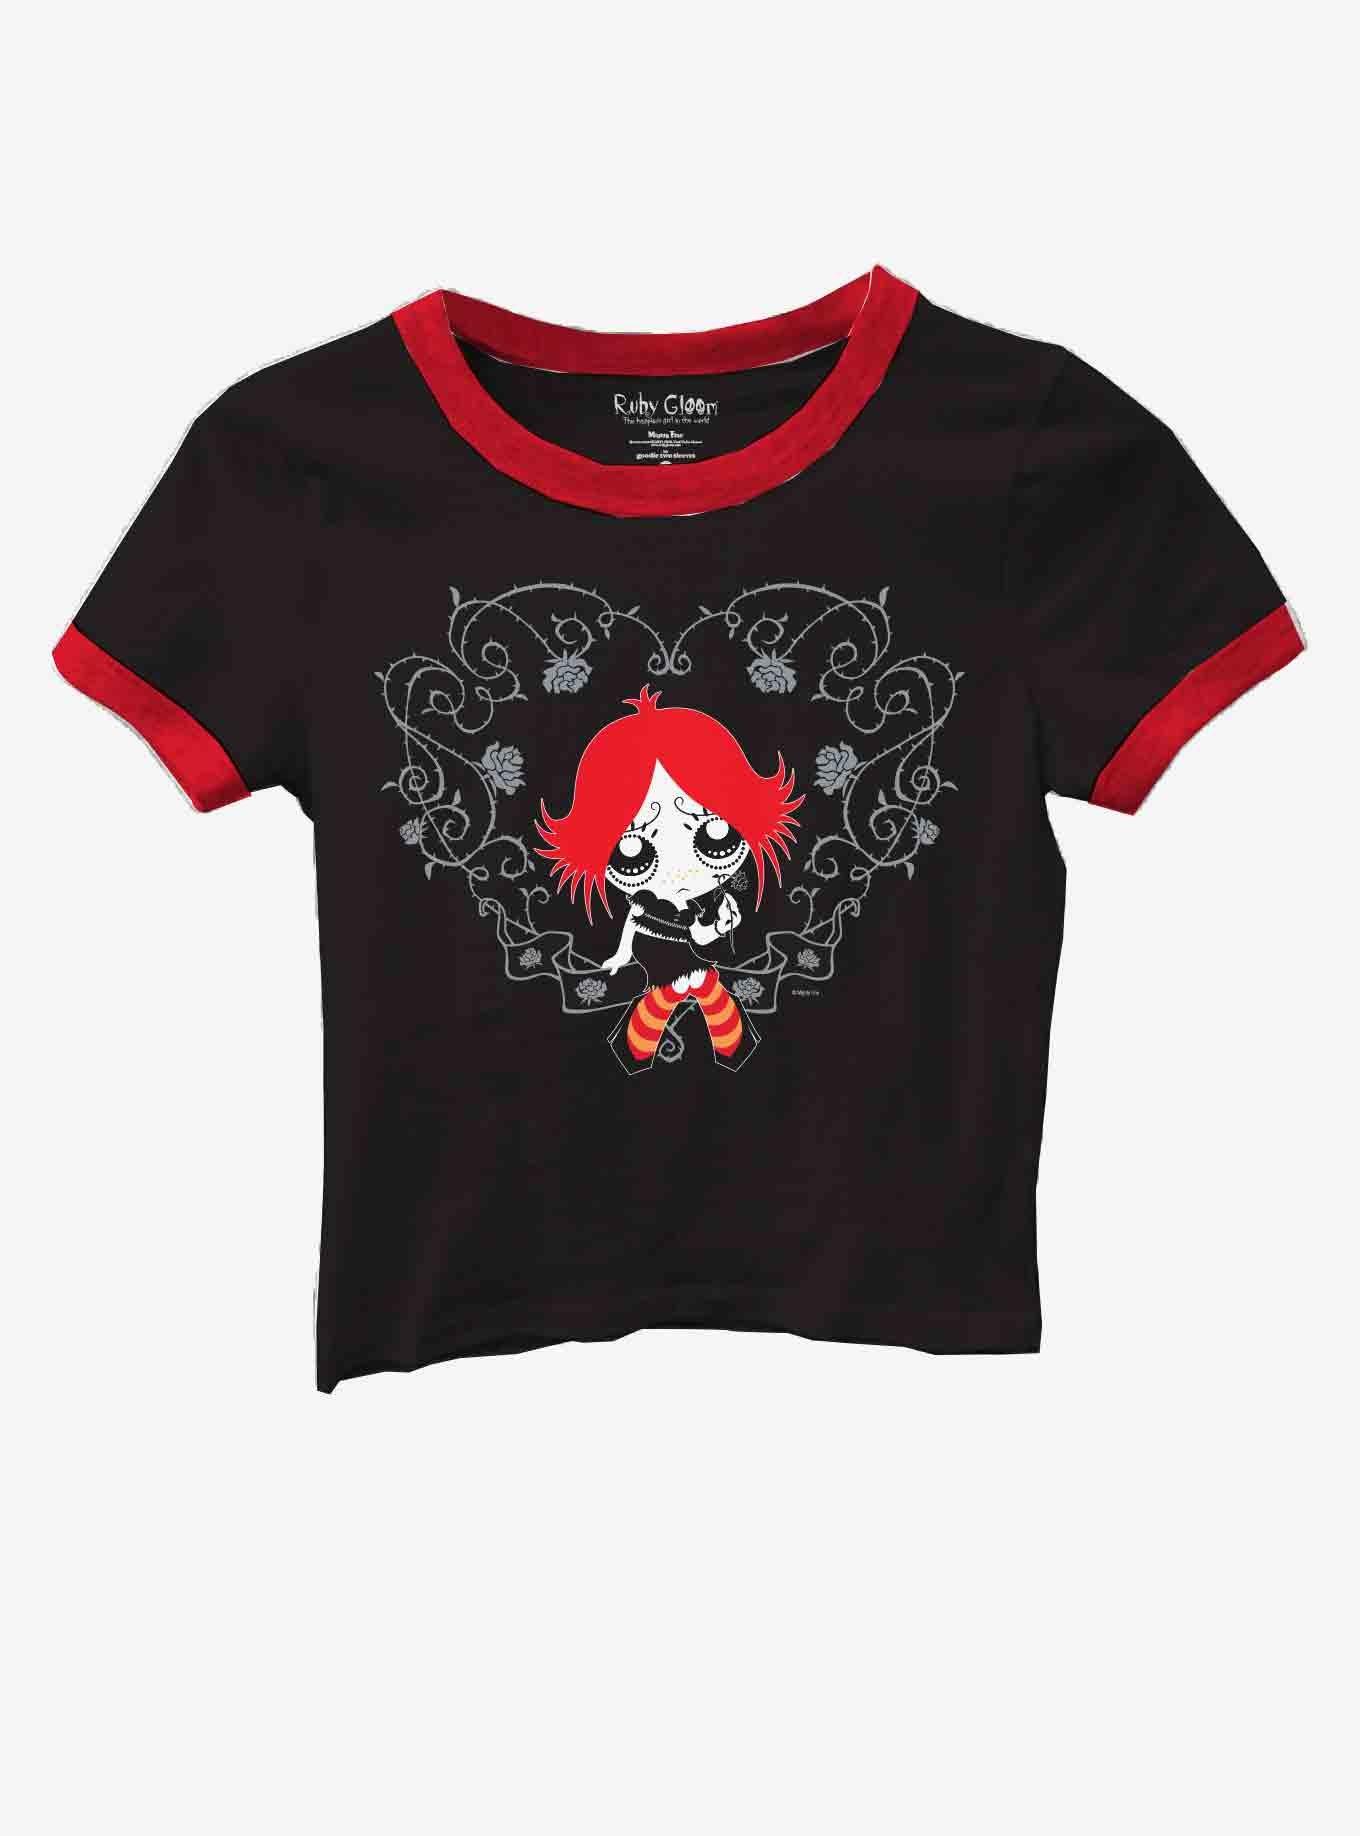 Ruby Gloom Heart Girls Baby Ringer T-Shirt, MULTI, hi-res